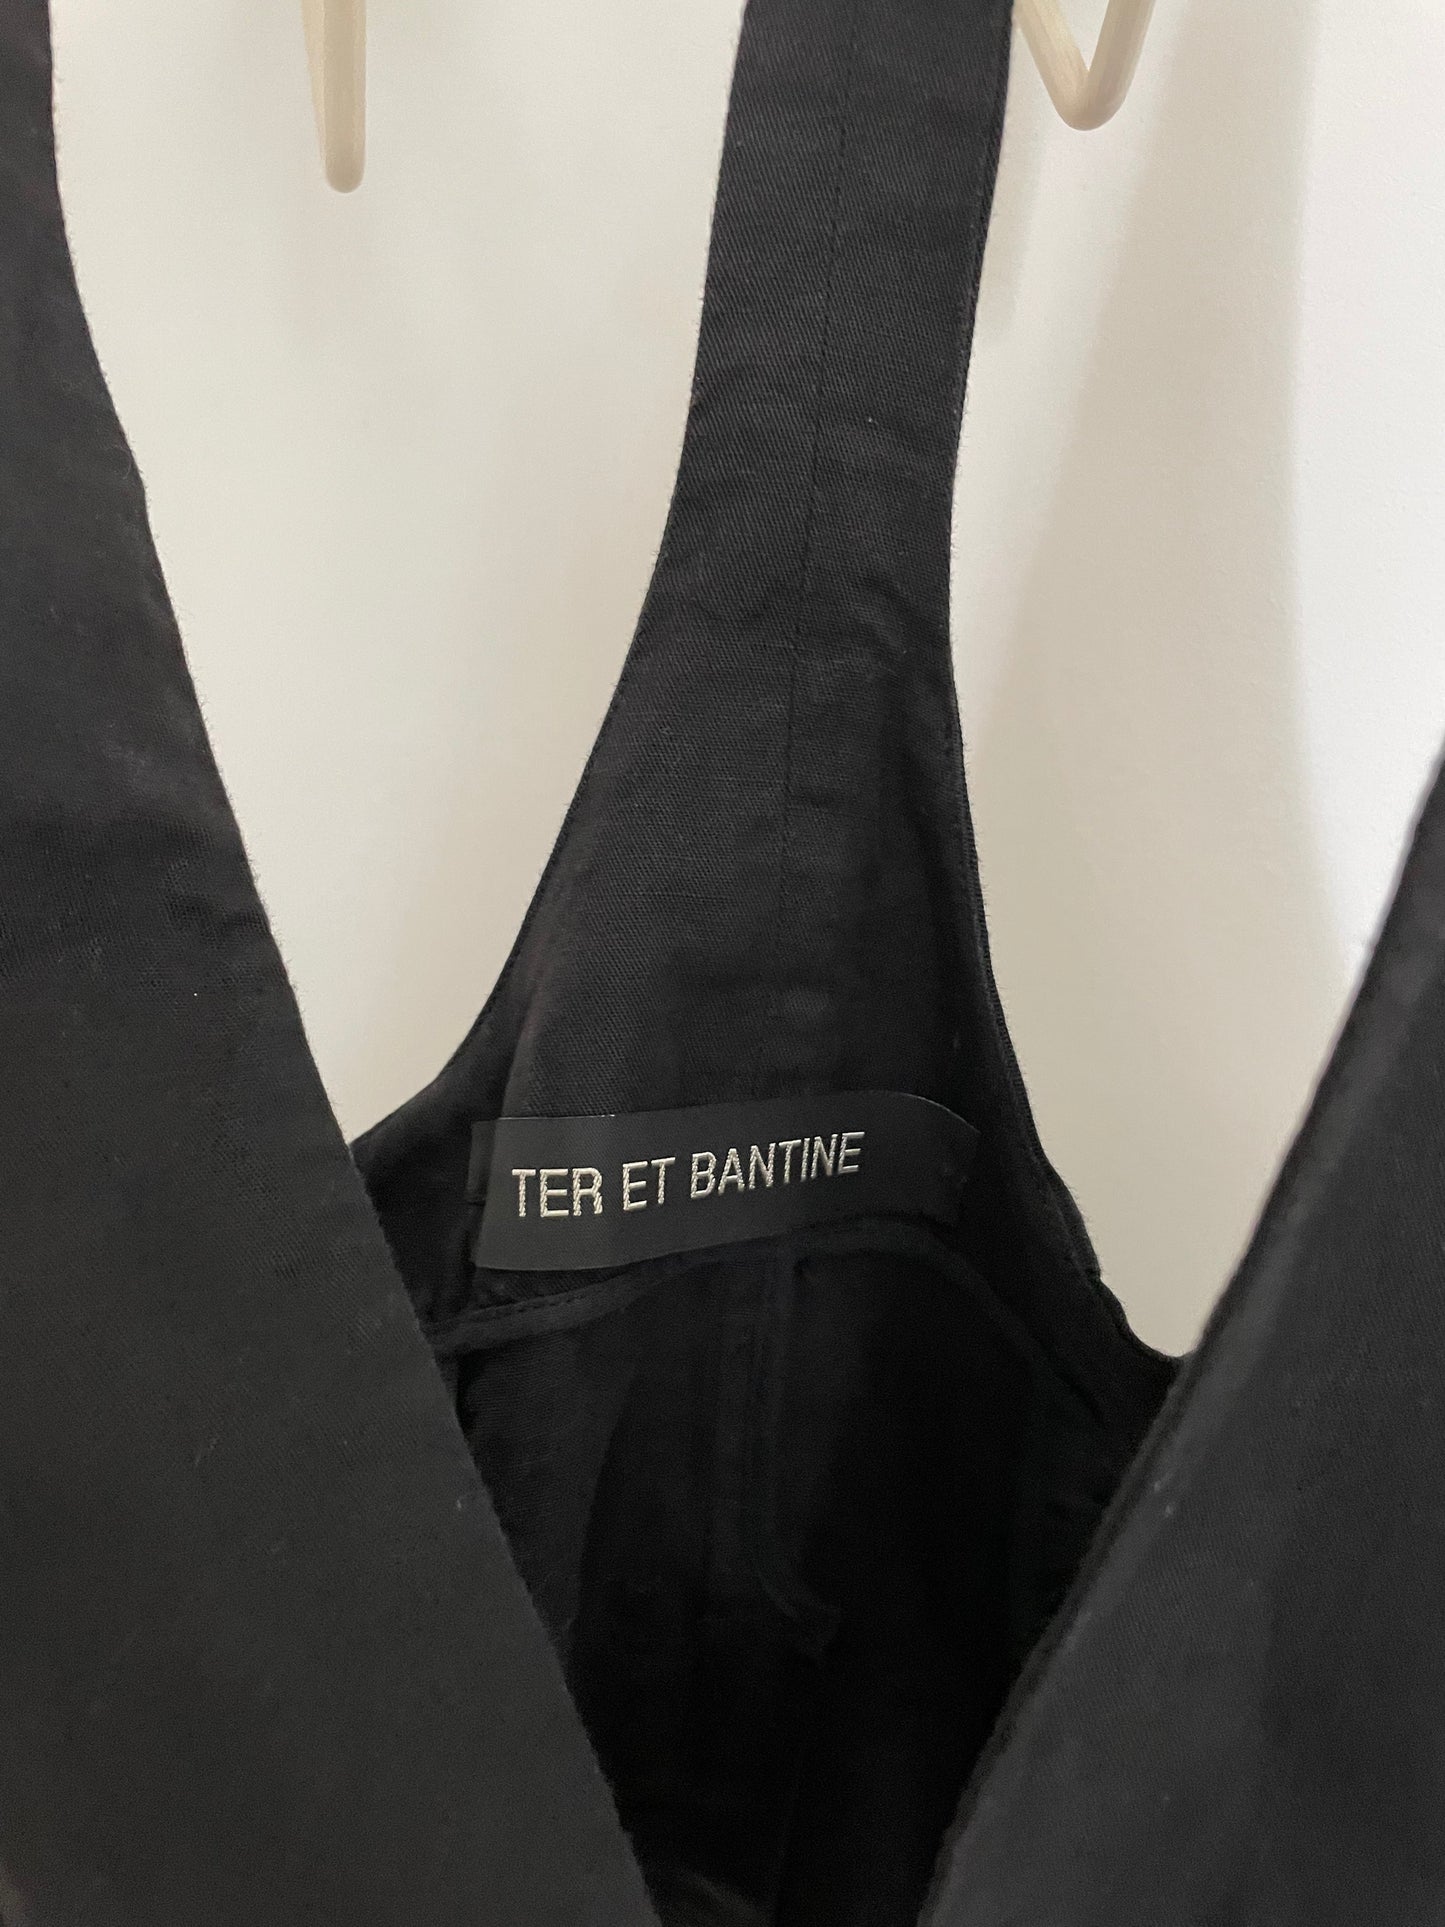 Ter et Bantine 2000's black cotton gilet